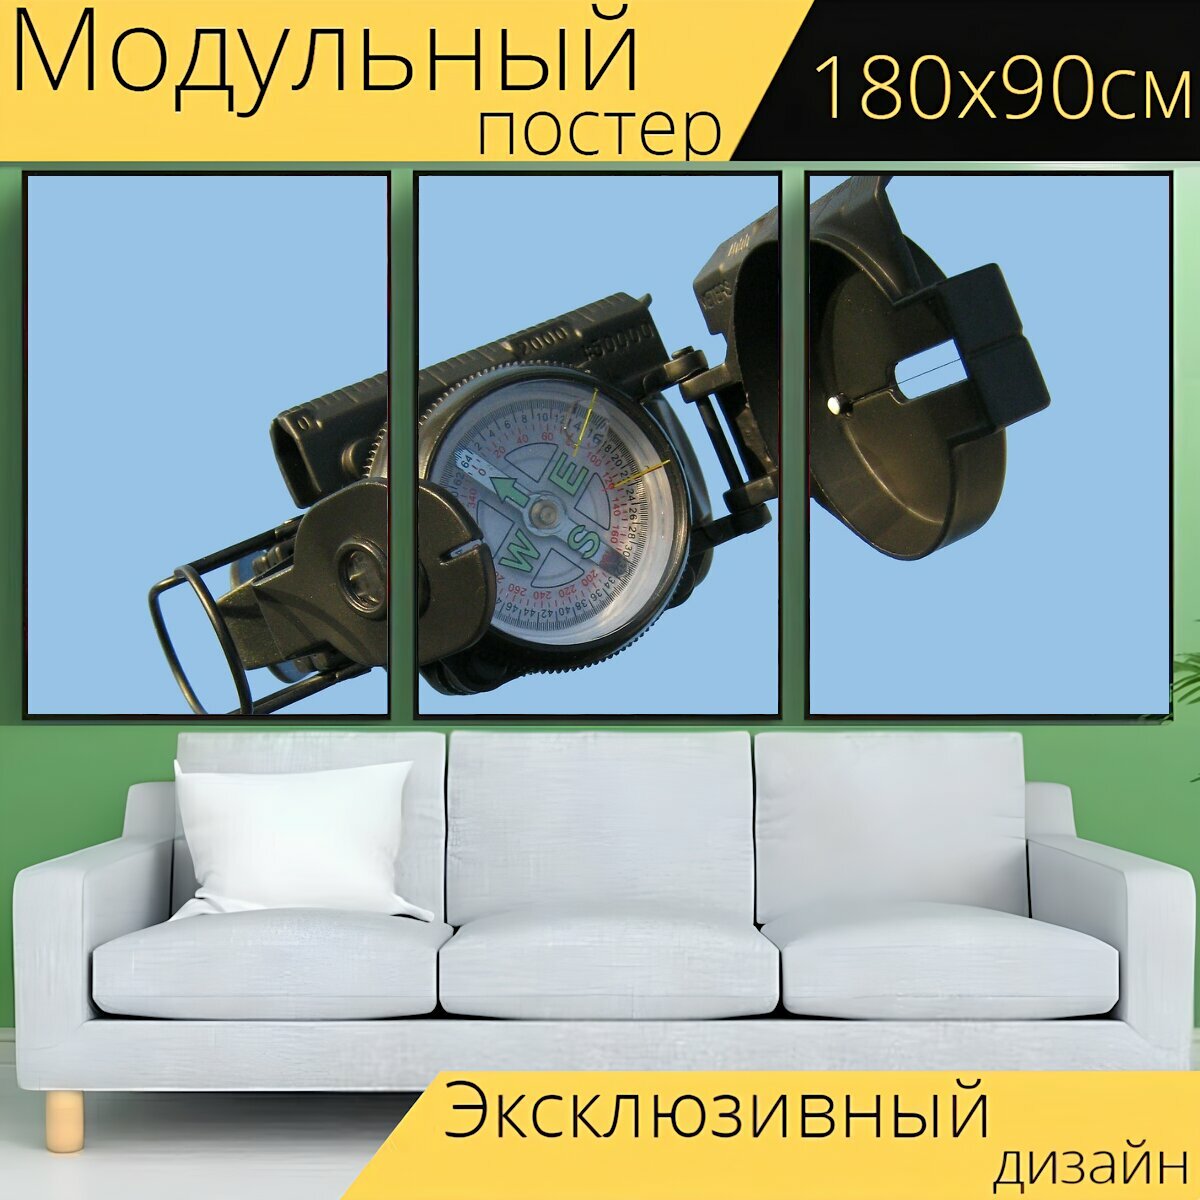 Модульный постер "Компас, навигация, направление по компасу" 180 x 90 см. для интерьера